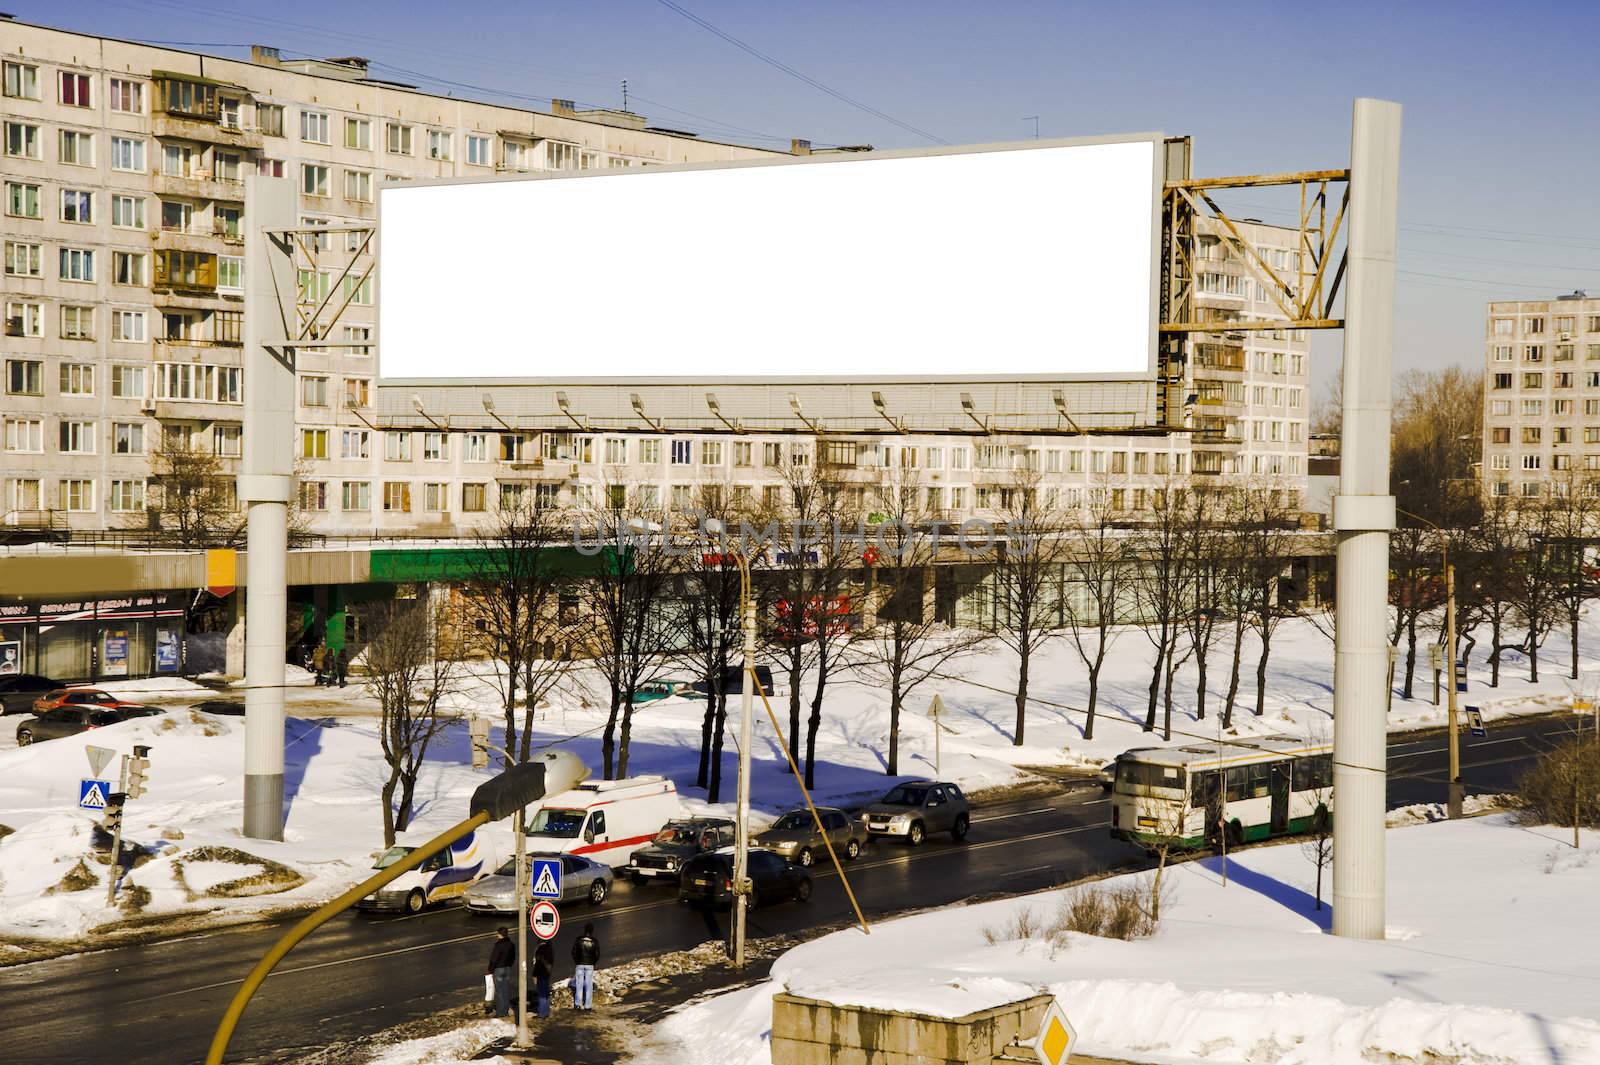 The street empty bilboard taken in winter time in St.Petersburg Russia